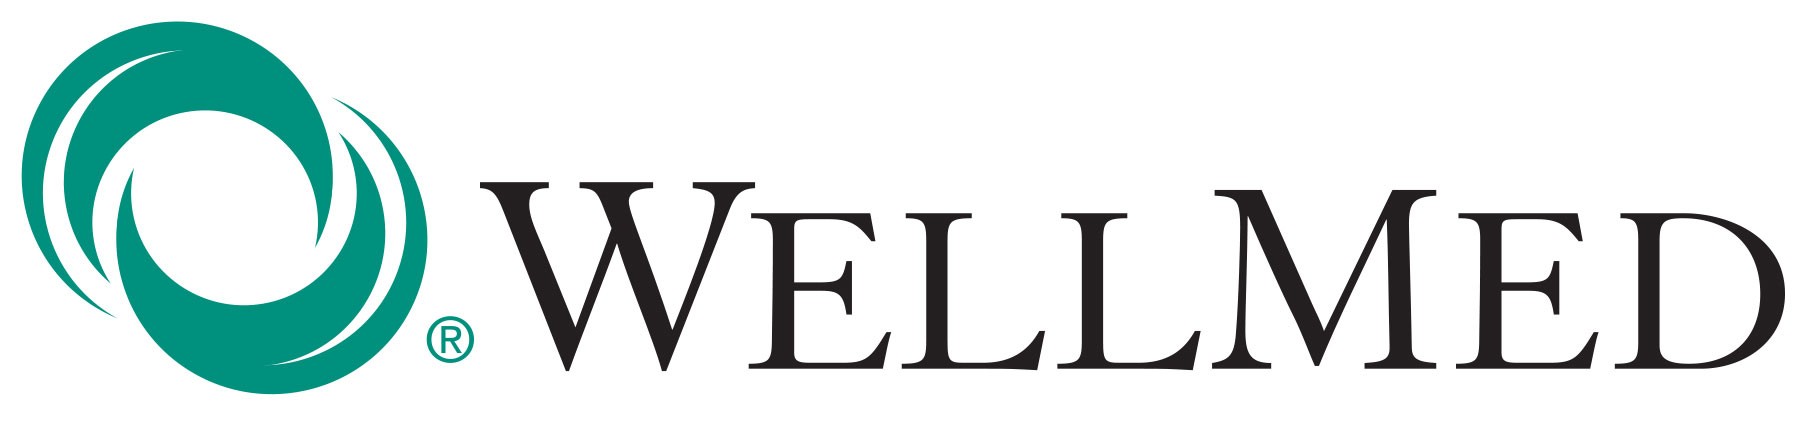 wellmed-logo-final